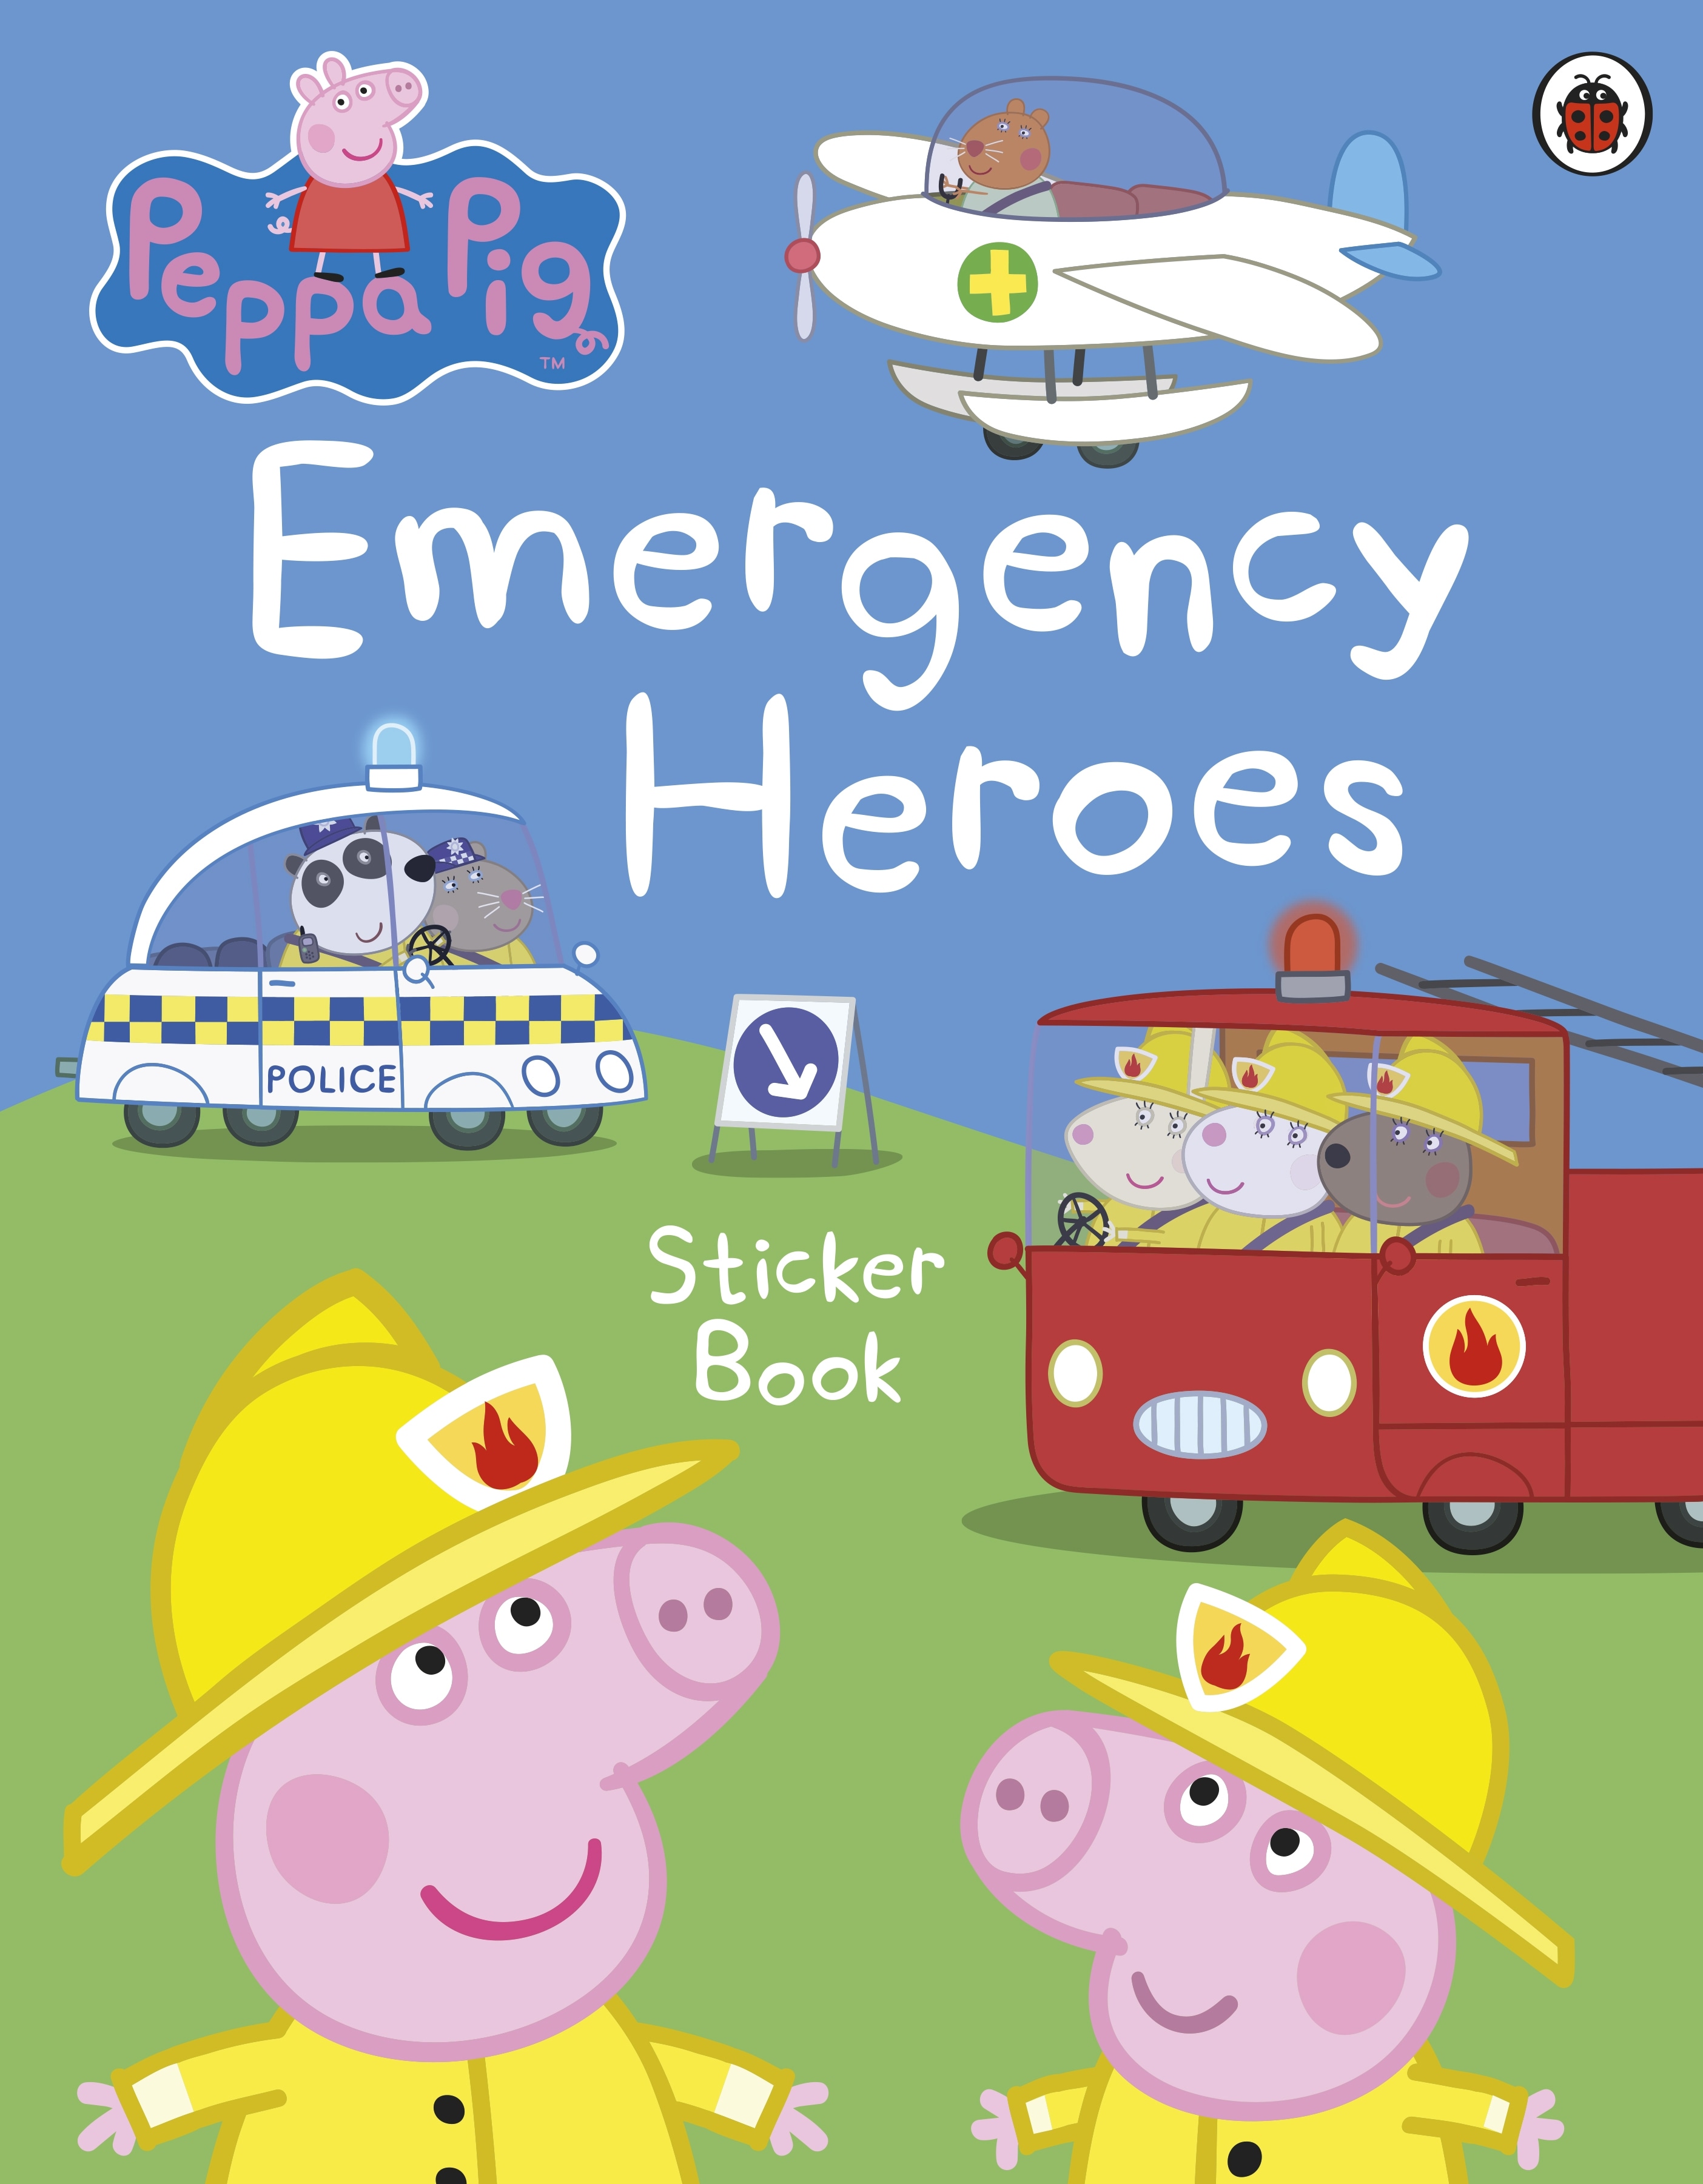 Book “Peppa Pig: Emergency Heroes Sticker Book” by Peppa Pig — February 3, 2022